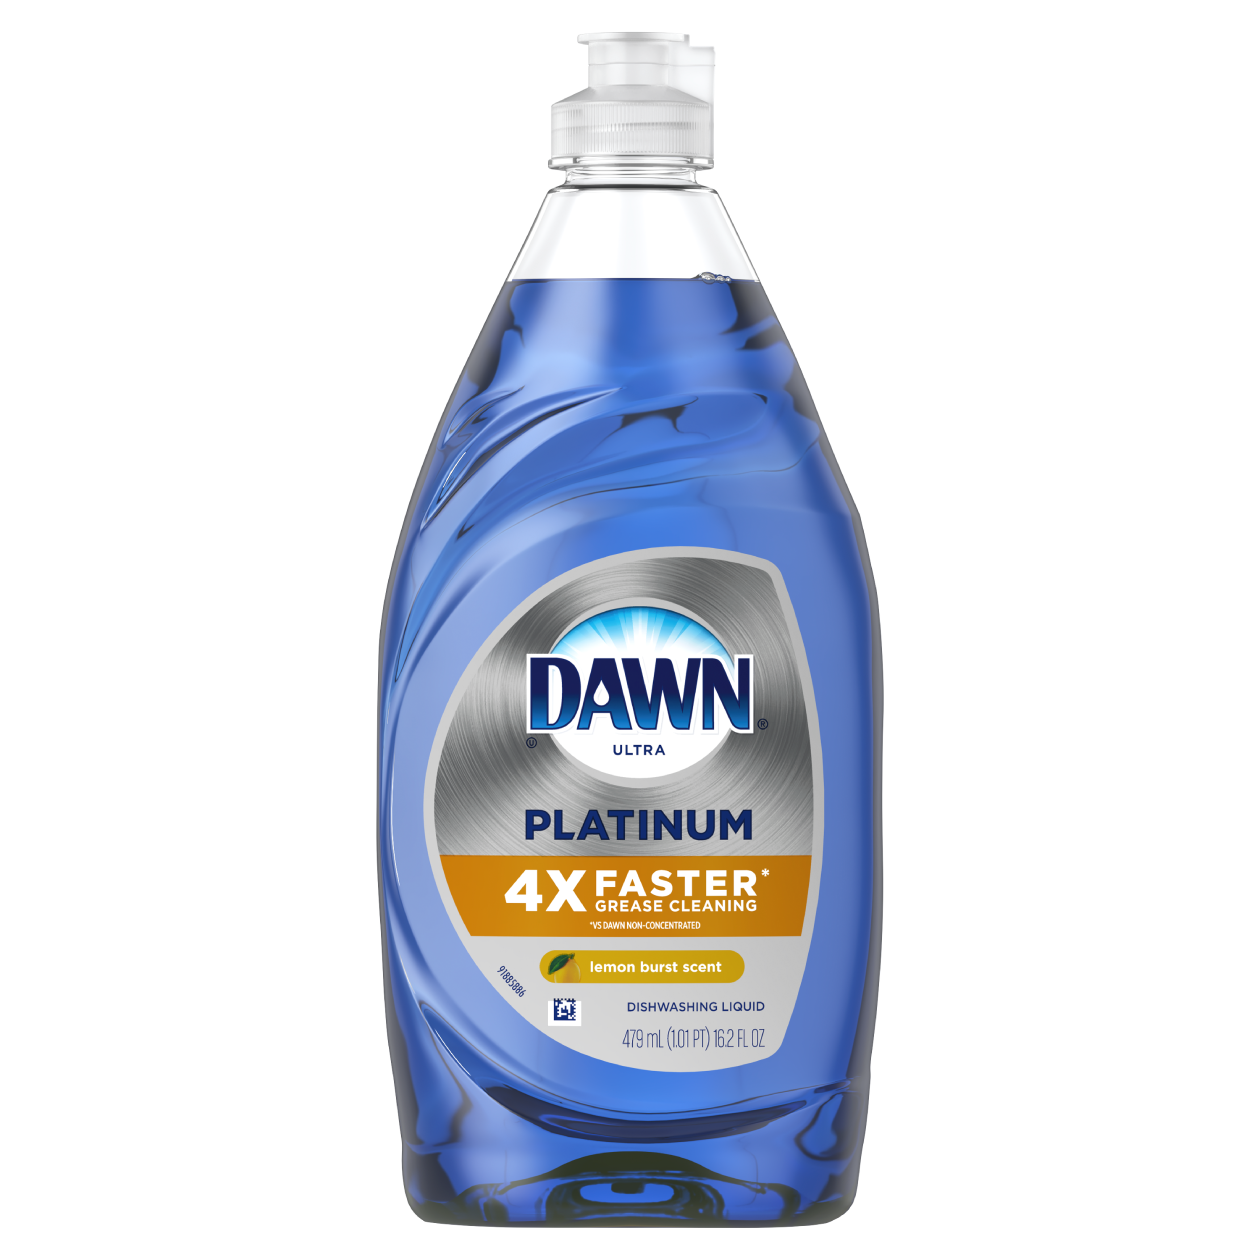 Dawn Platinum Dishwashing Liquid Lemon Burst